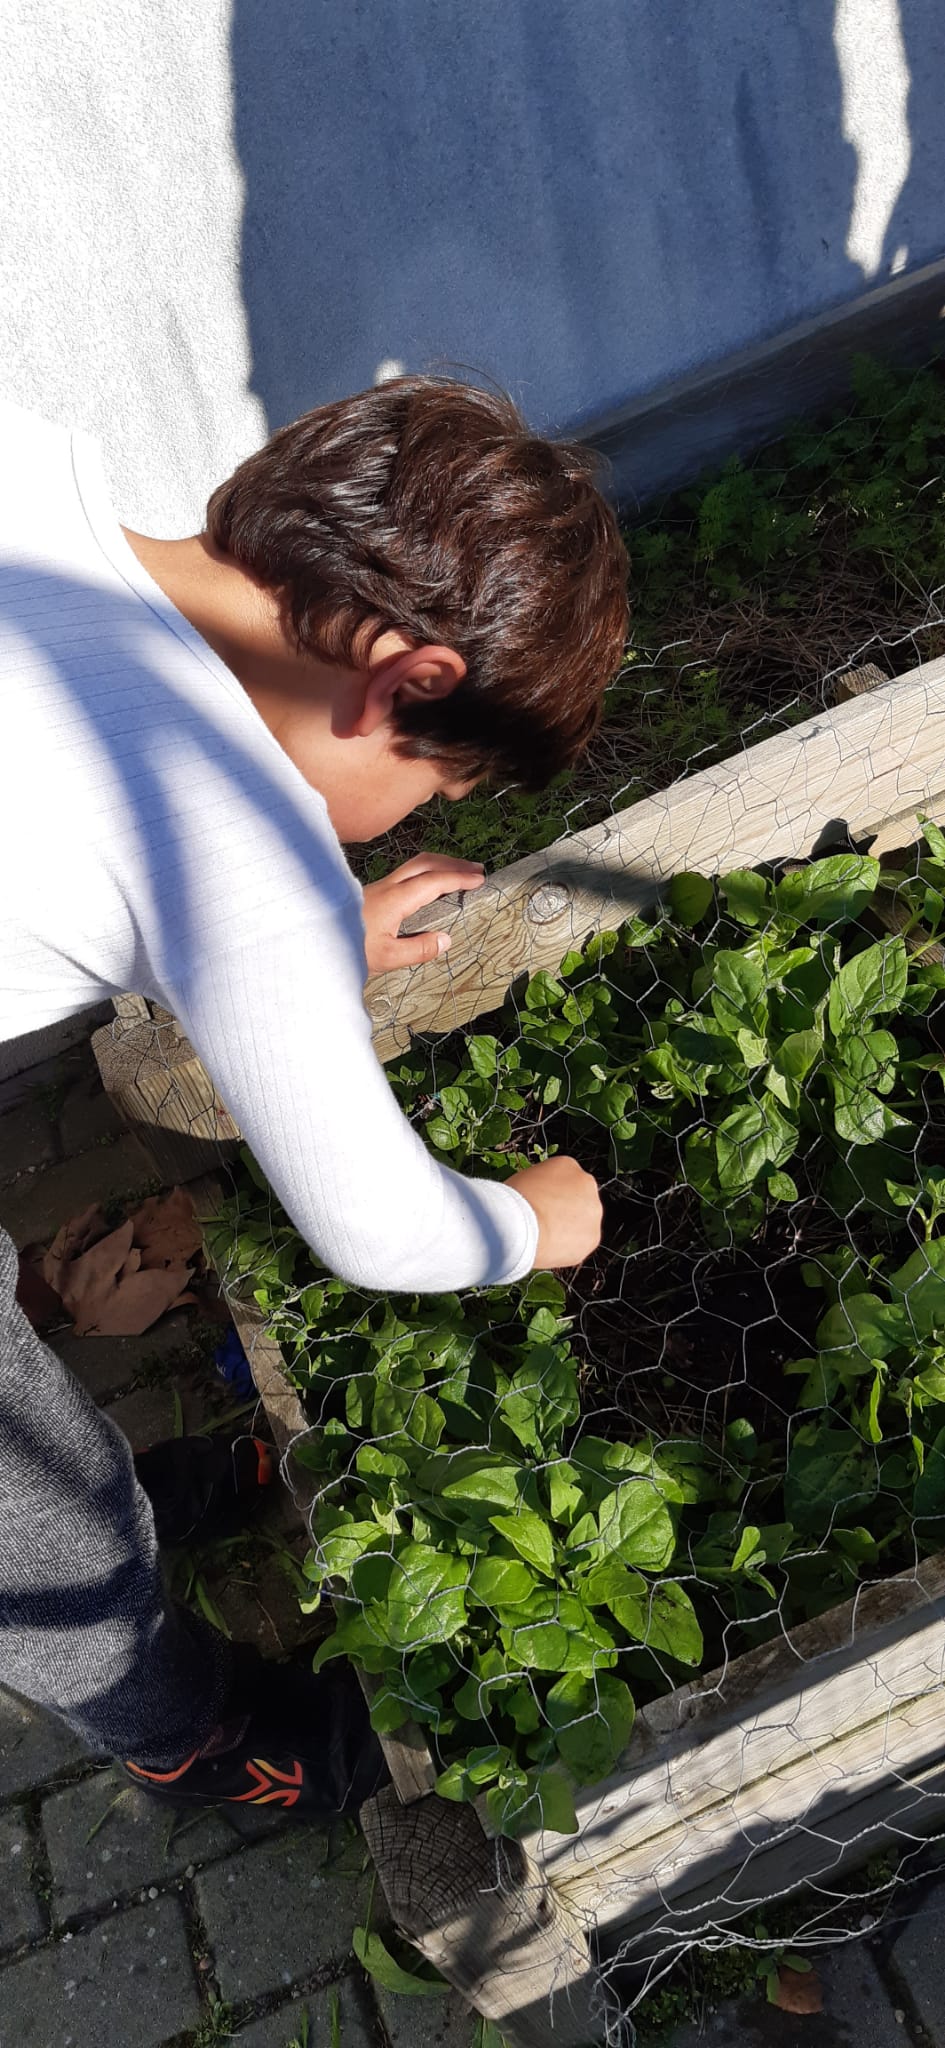 Tirar ervas daninhas para que os espinafres cresçam saudáveis.